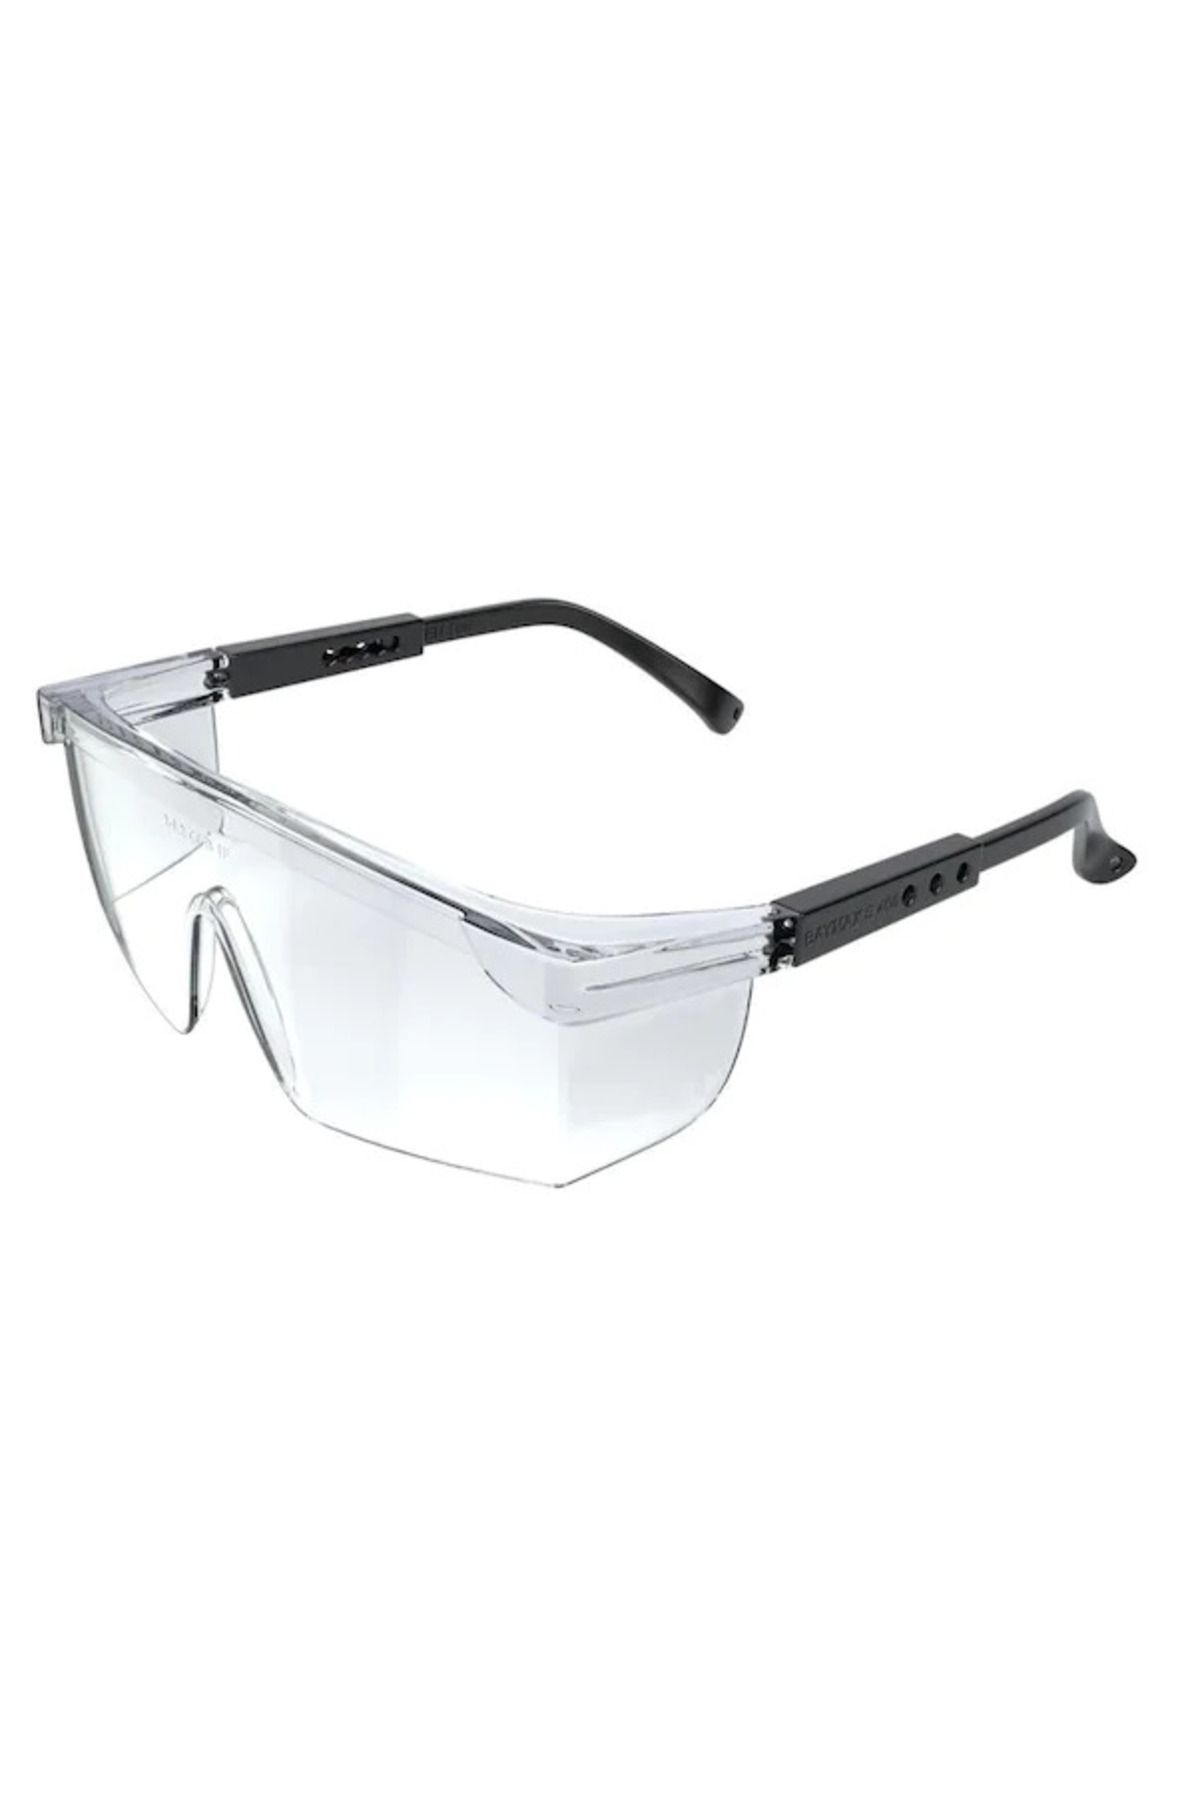 Genel Markalar Korumalı Laboratuvar Gözlüğü Şeffaf Ayarlanır Iş Güvenlik Gözlüğü Ce Sertifikalı